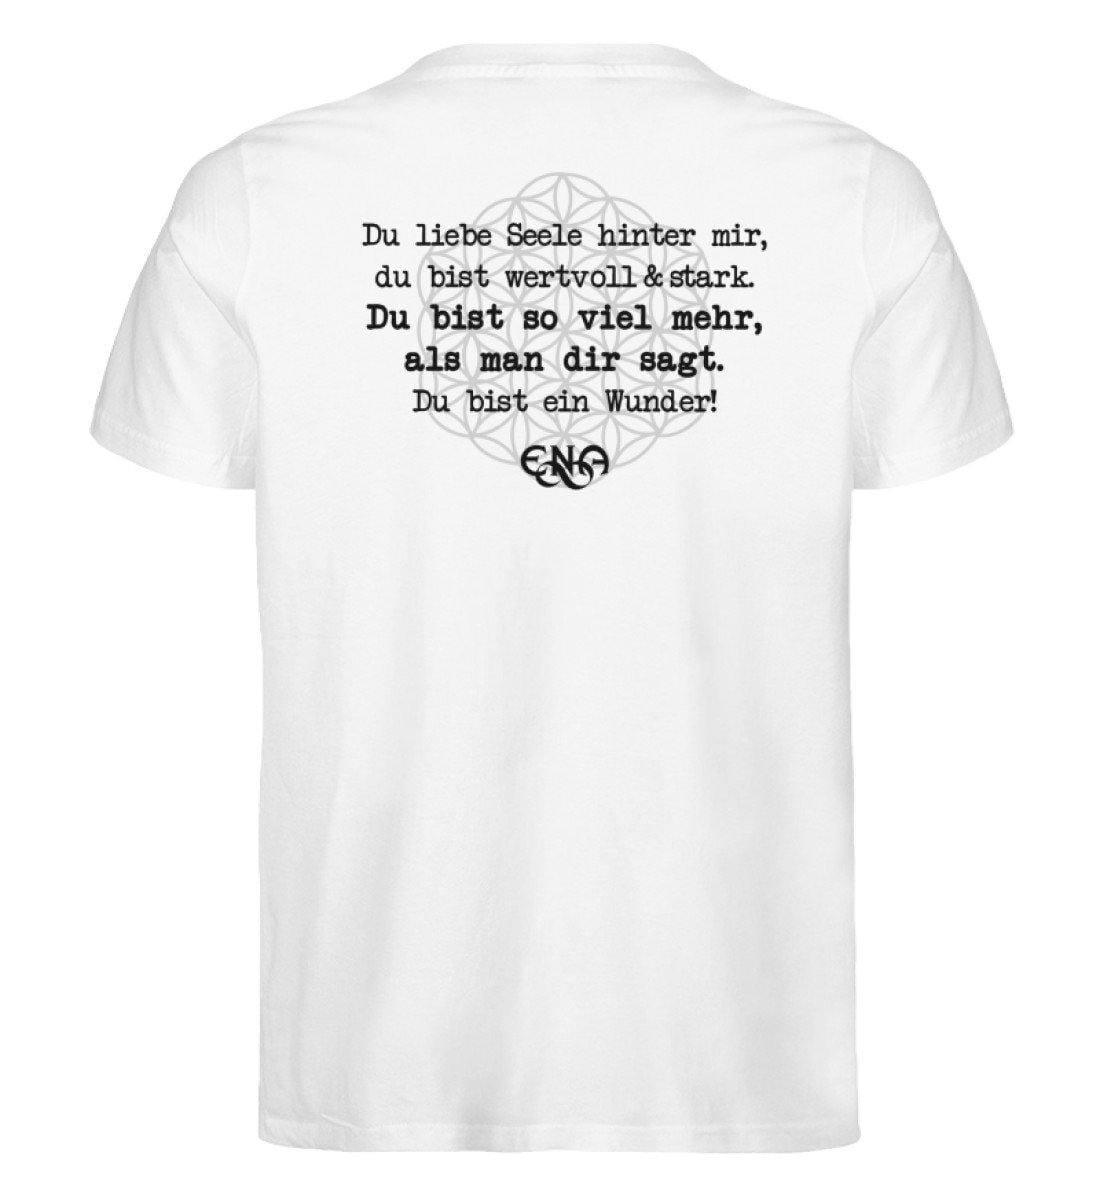 Du liebe Seele hinter mir ... [ENA] - Unisex Organic Shirt Rocker T-Shirt ST/ST Shirtee Weiß S 